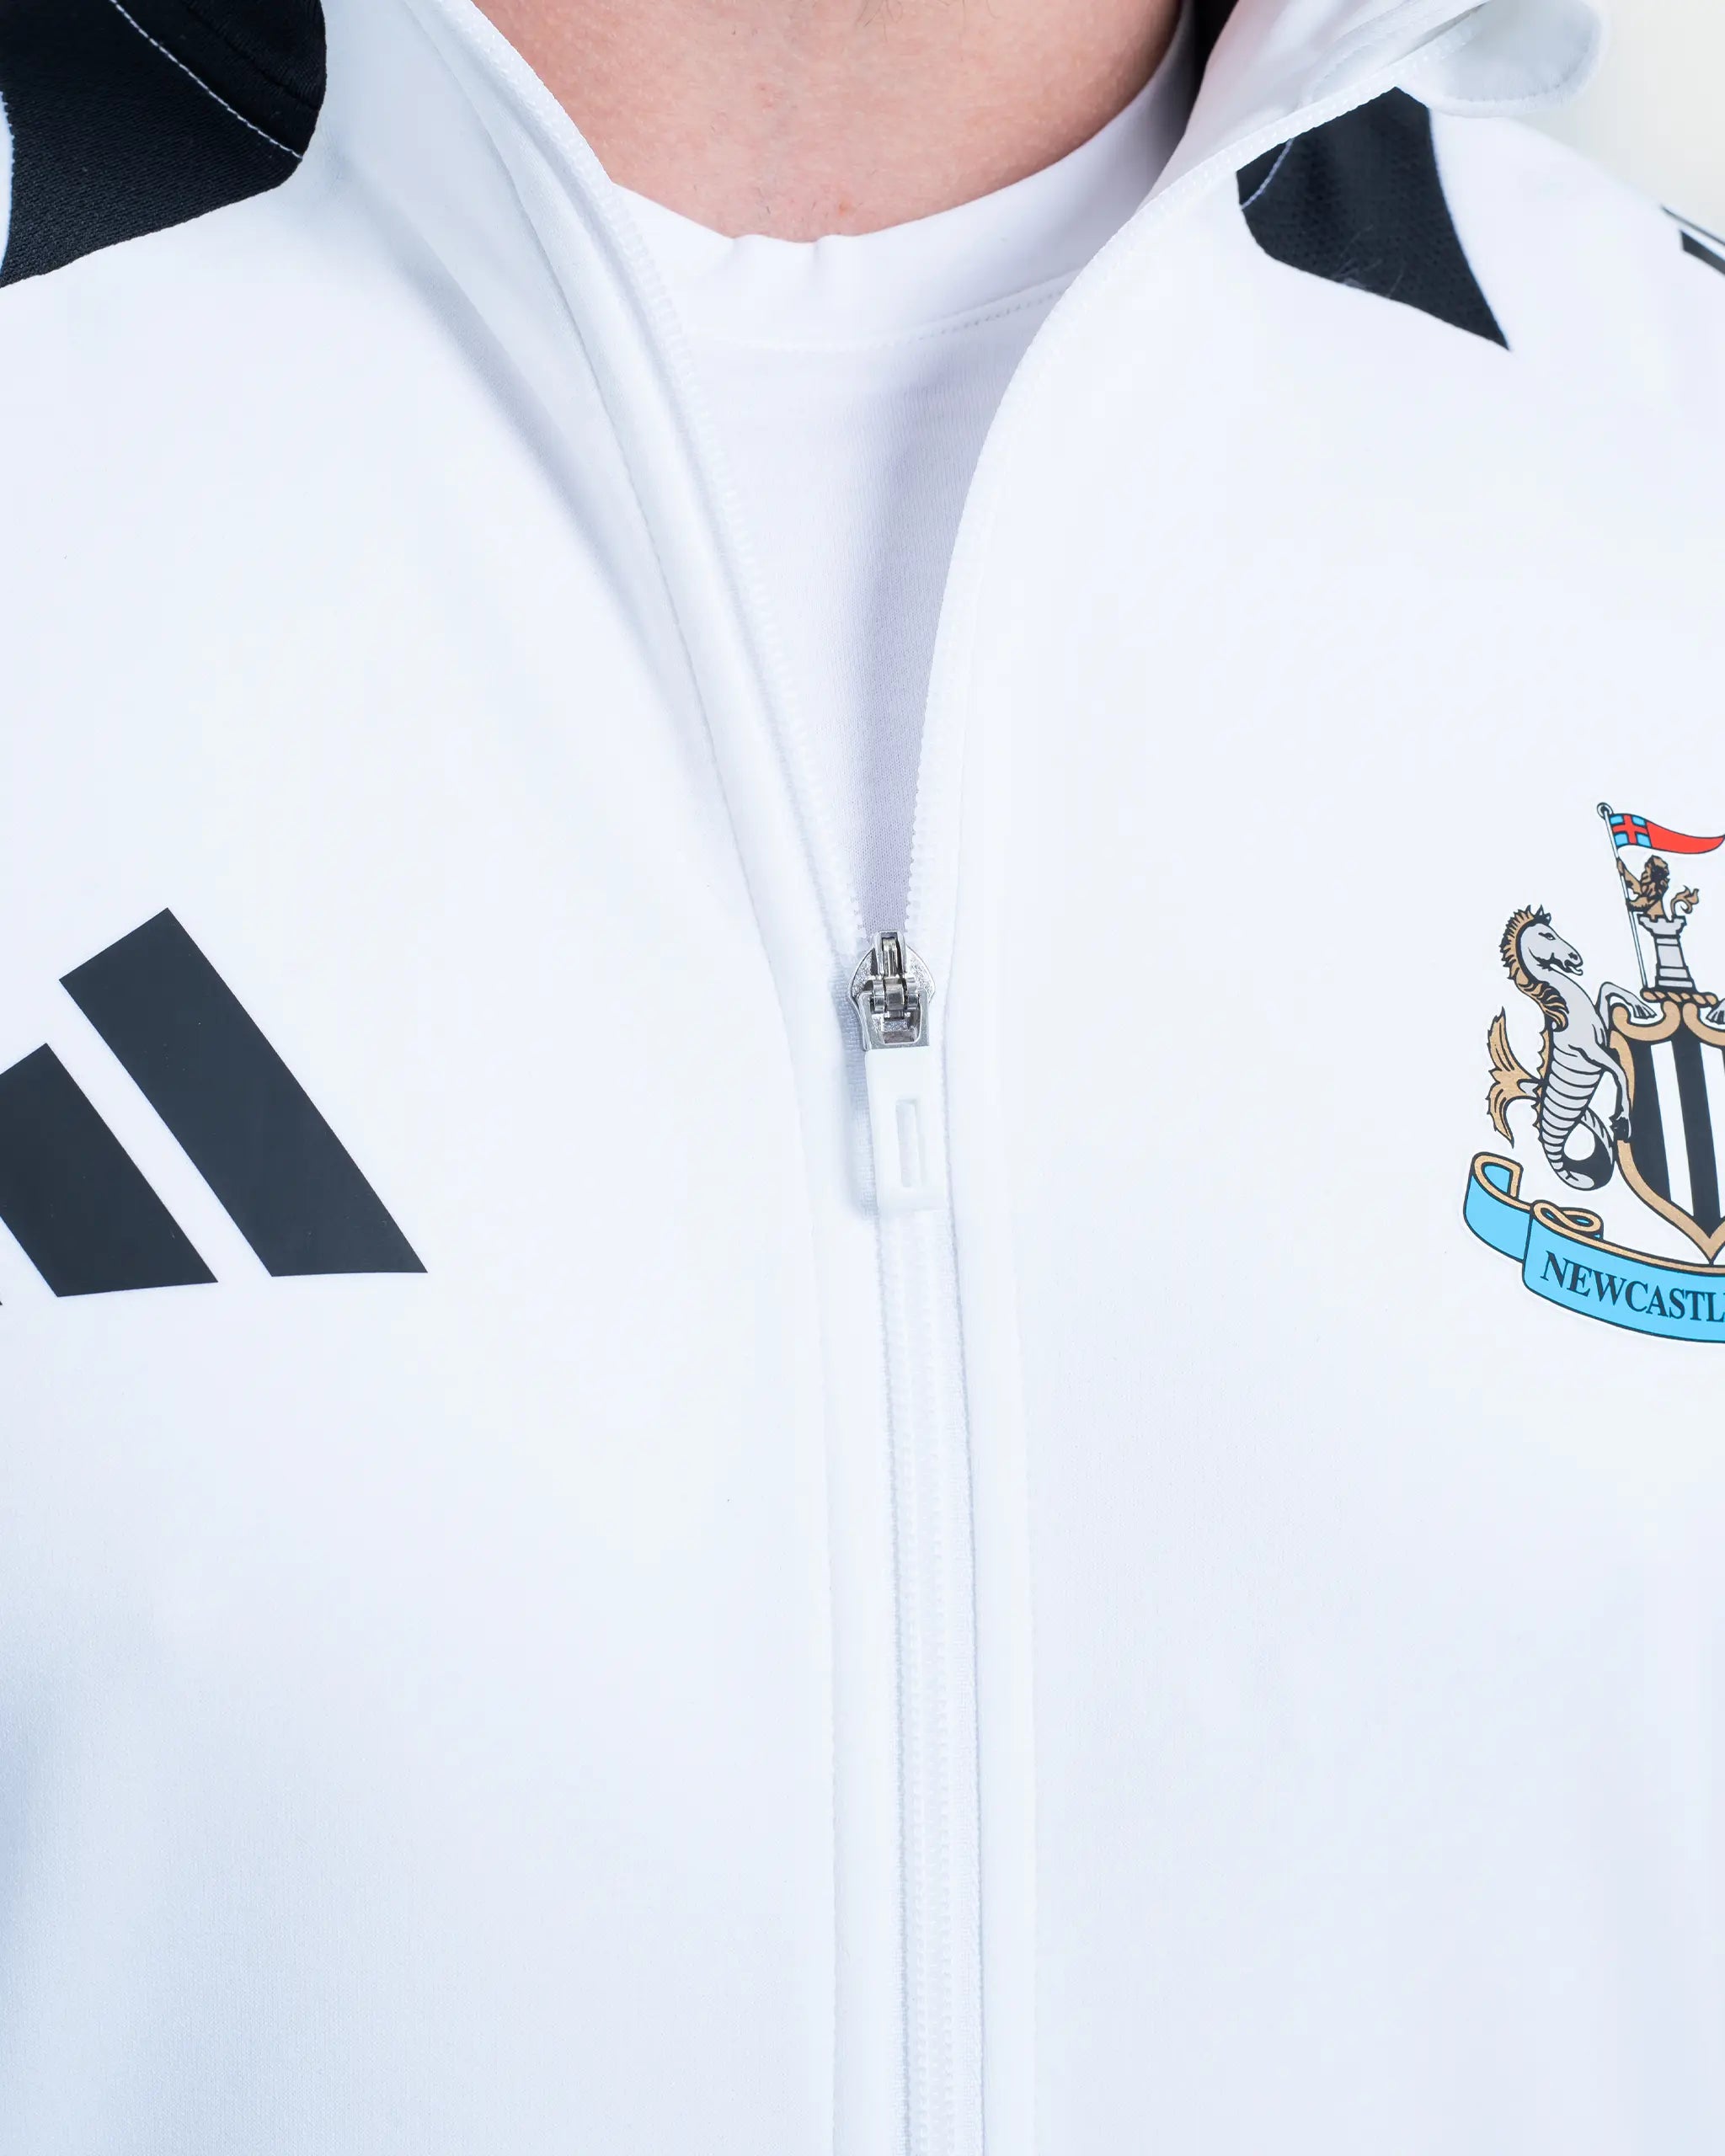 Newcastle United adidas Coach's Competition Training Jacket